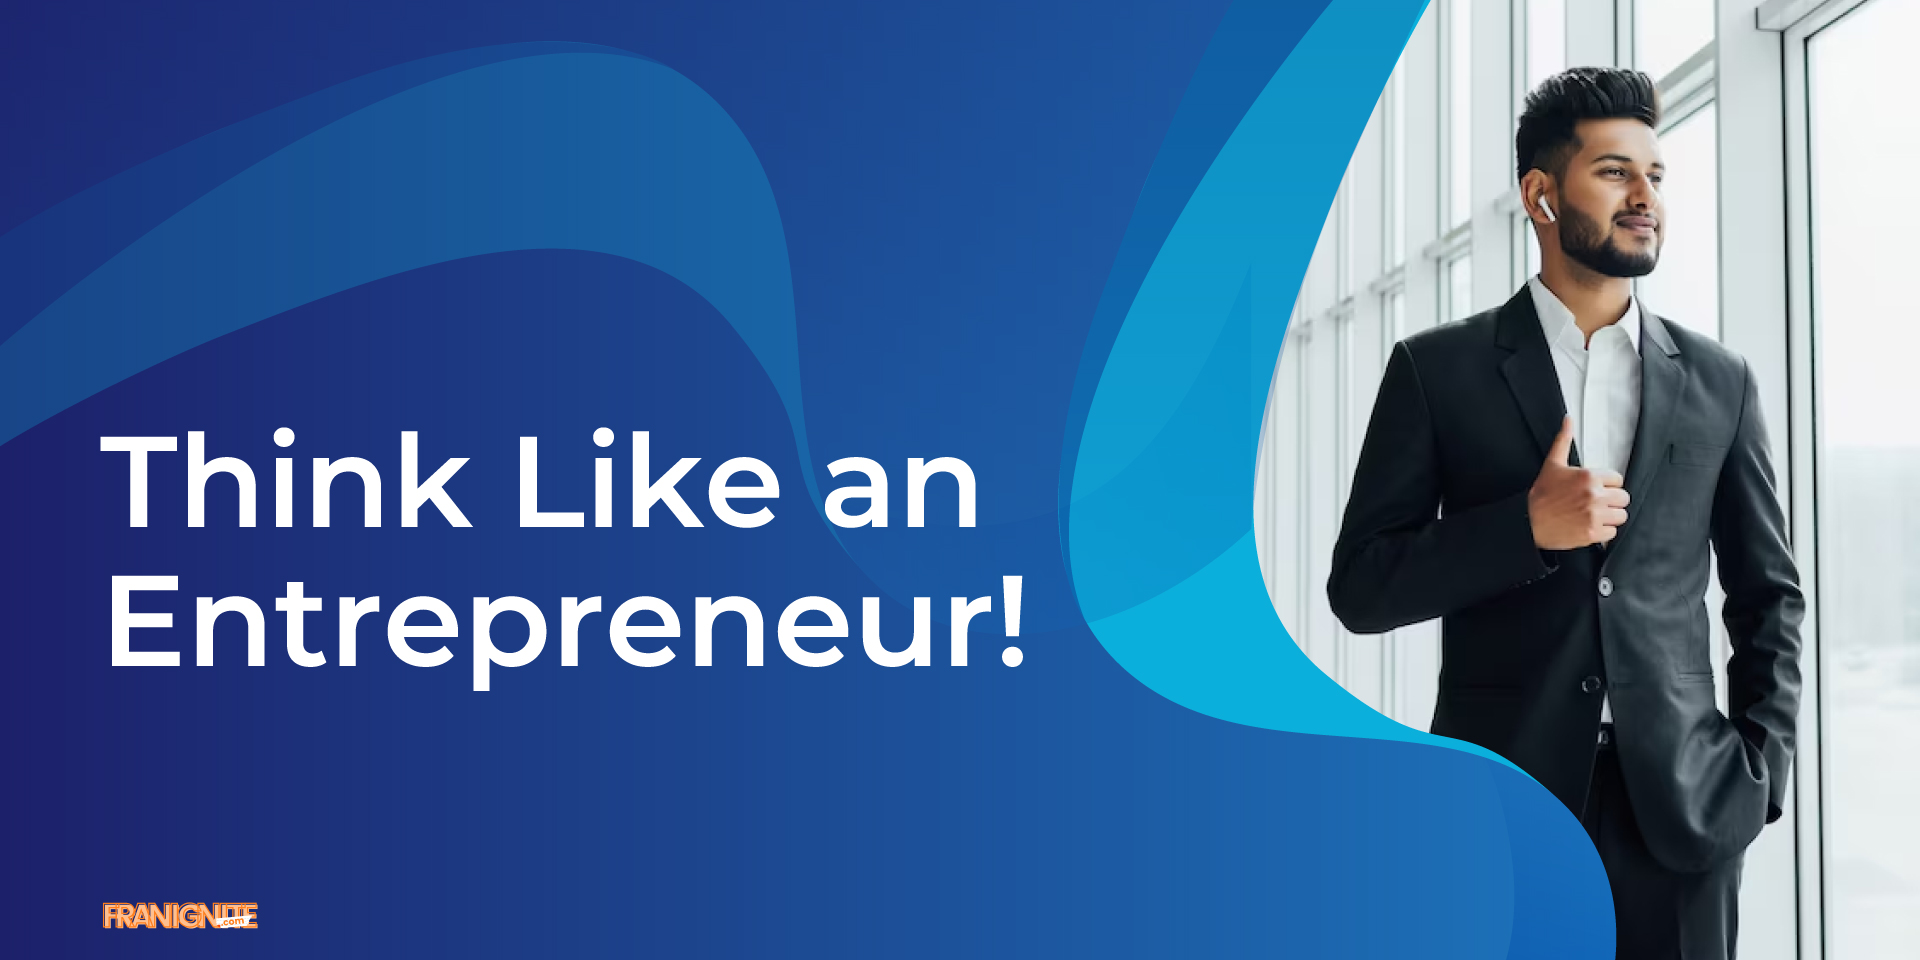 Think Like an Entrepreneur!